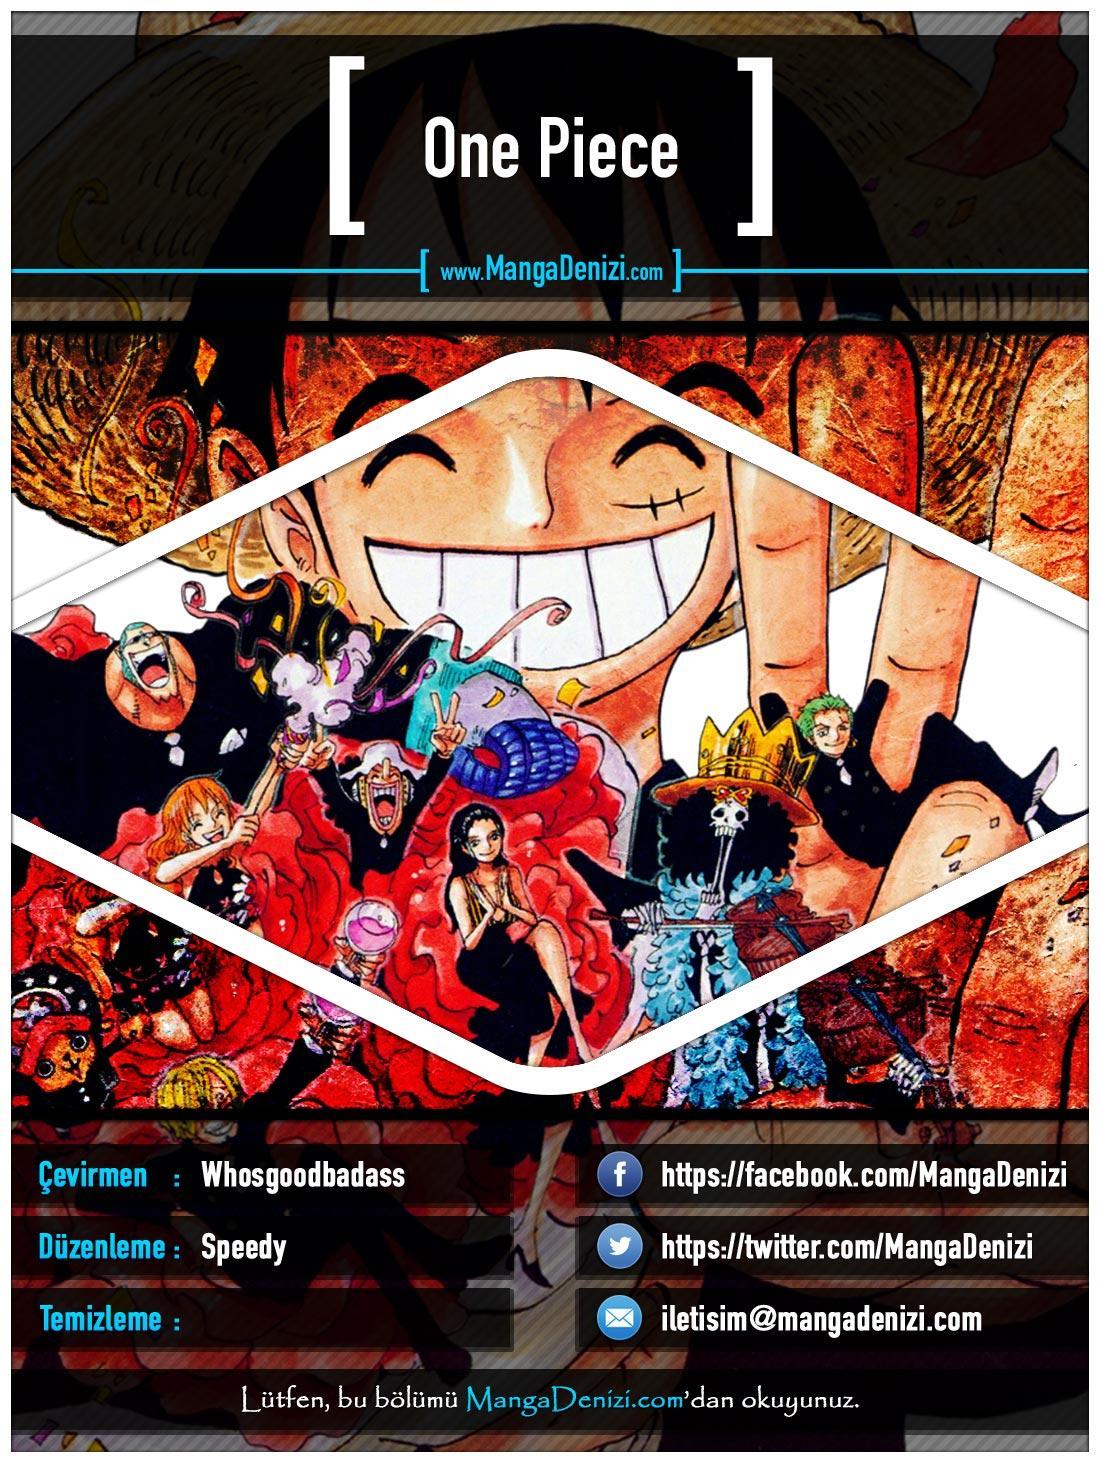 One Piece [Renkli] mangasının 0442 bölümünün 1. sayfasını okuyorsunuz.